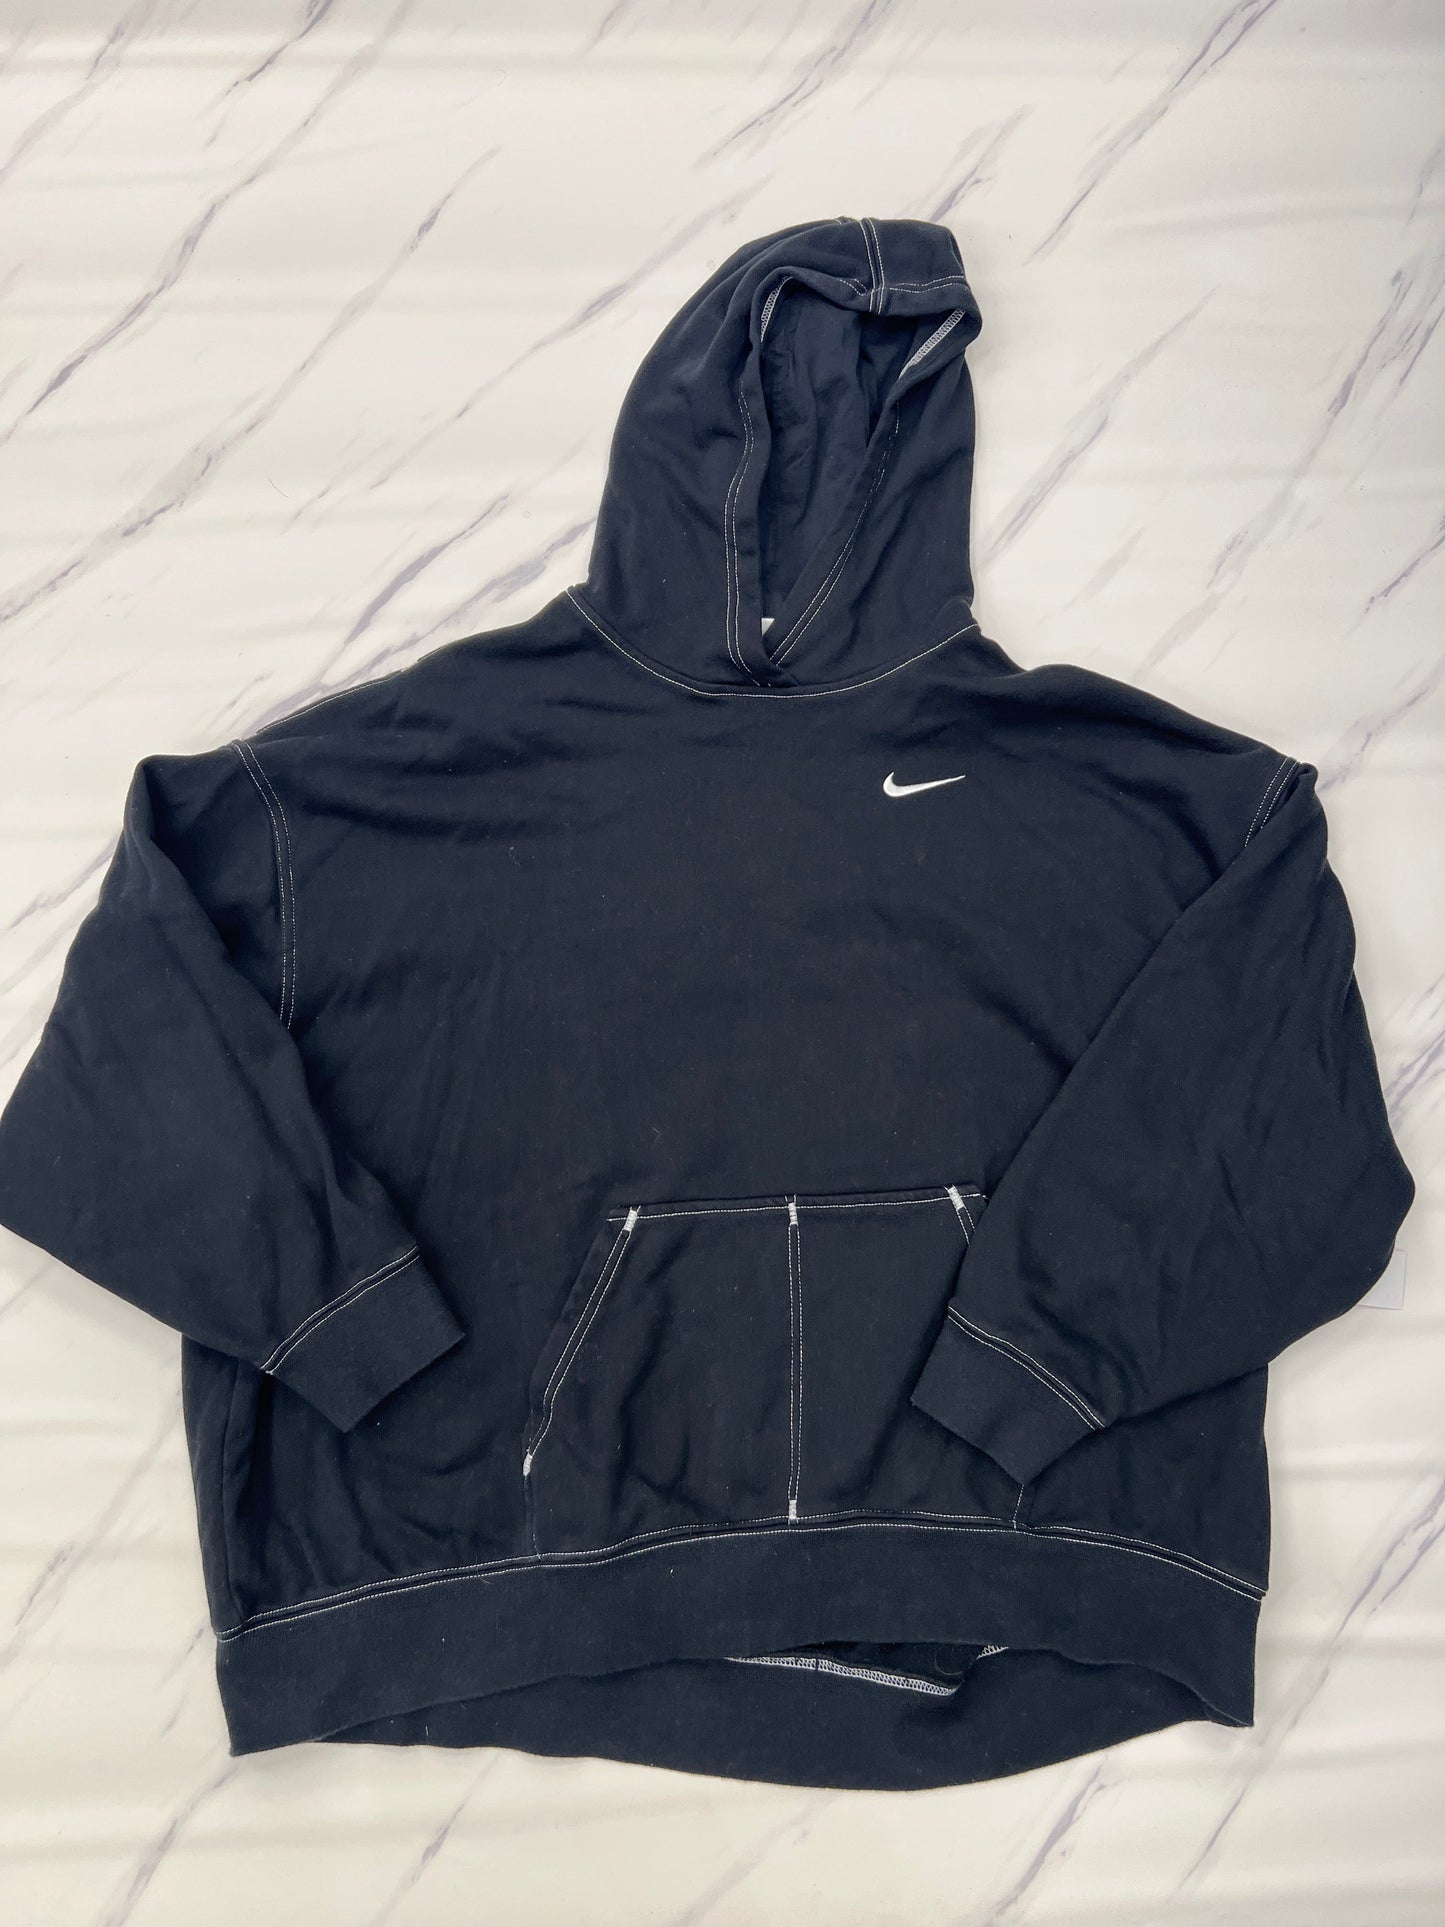 Athletic Sweatshirt Hoodie Nike Apparel, Size M